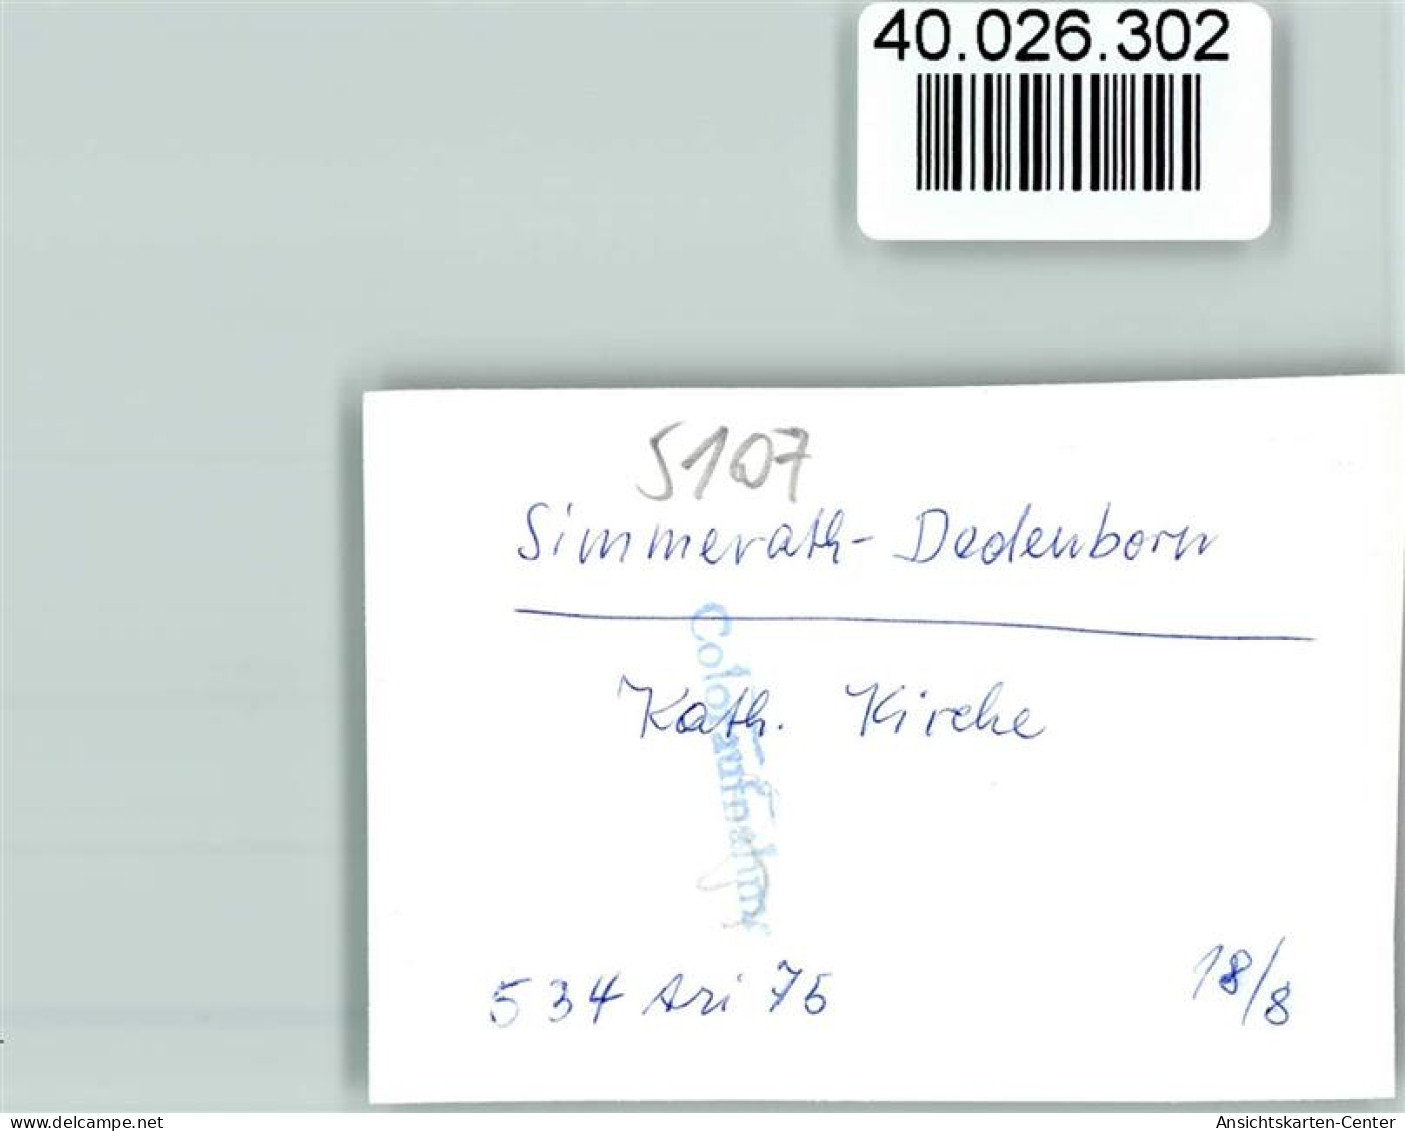 40026302 - Dedenborn - Simmerath